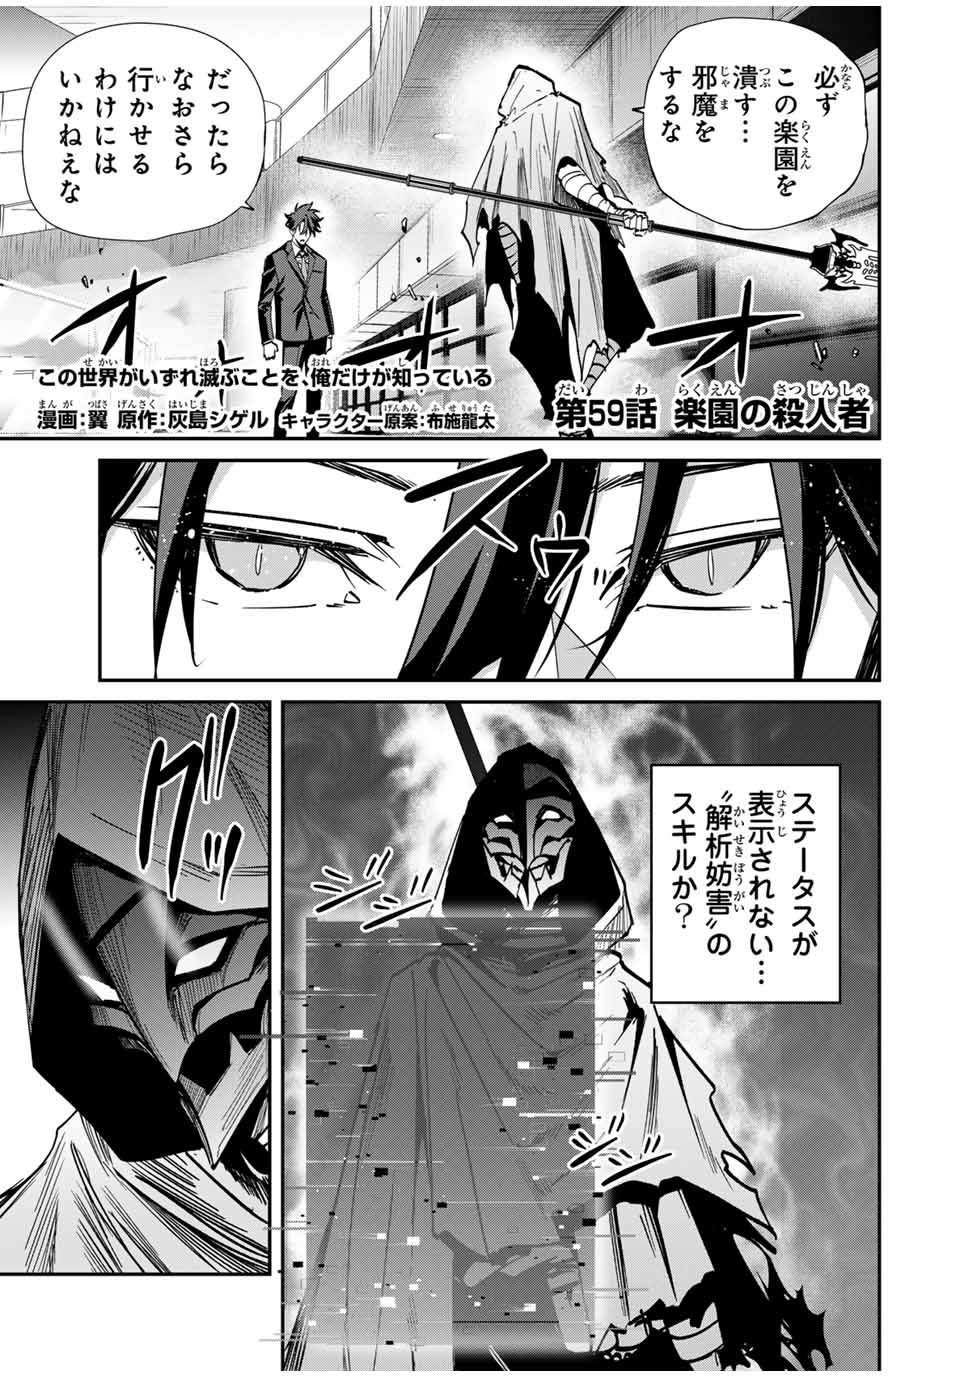 Kono Sekai ga Izure Horobu Koto wo, Ore dake ga Shitte Iru - Chapter 59 - Page 1